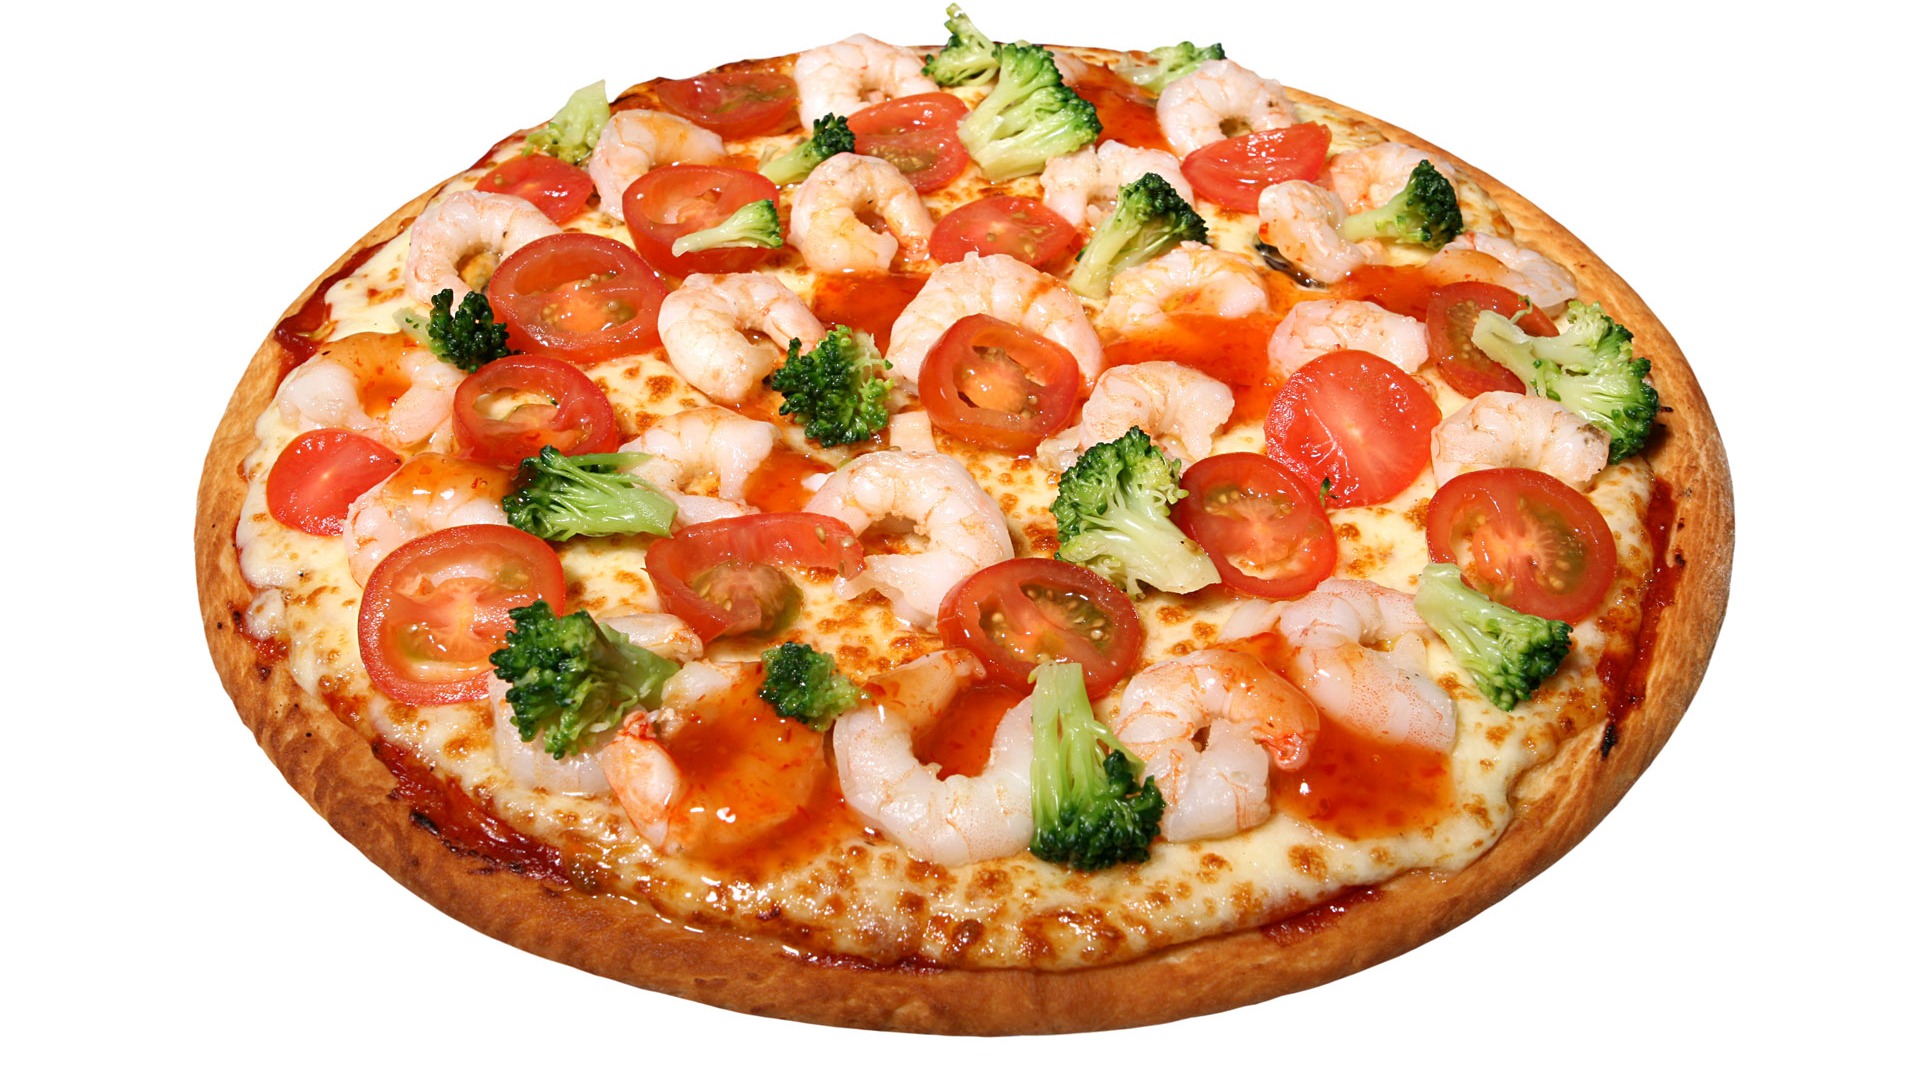 Fondos de pizzerías de Alimentos (4) #13 - 1920x1080